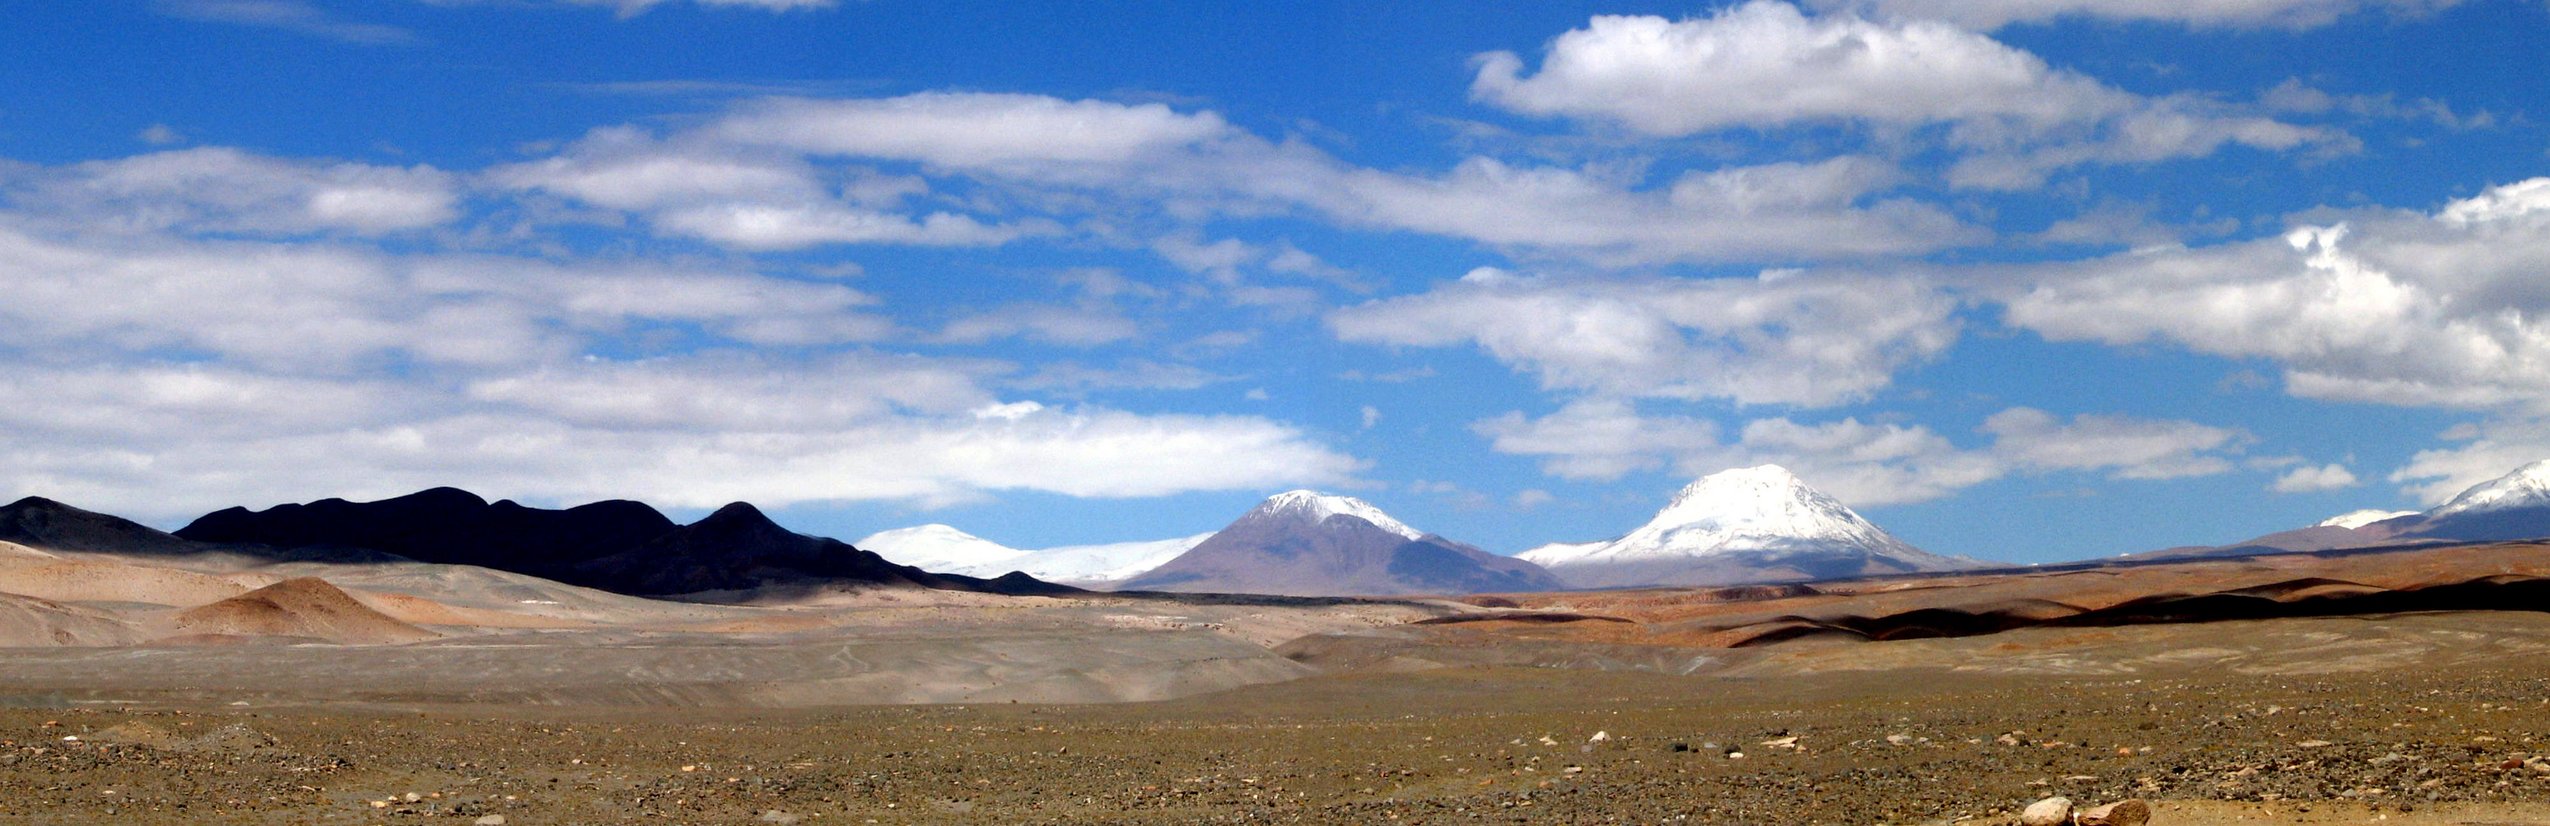 Chile Familienurlaub - Interview zur Chile Rundreise mit Jugendlichen - Vulkane in Chile